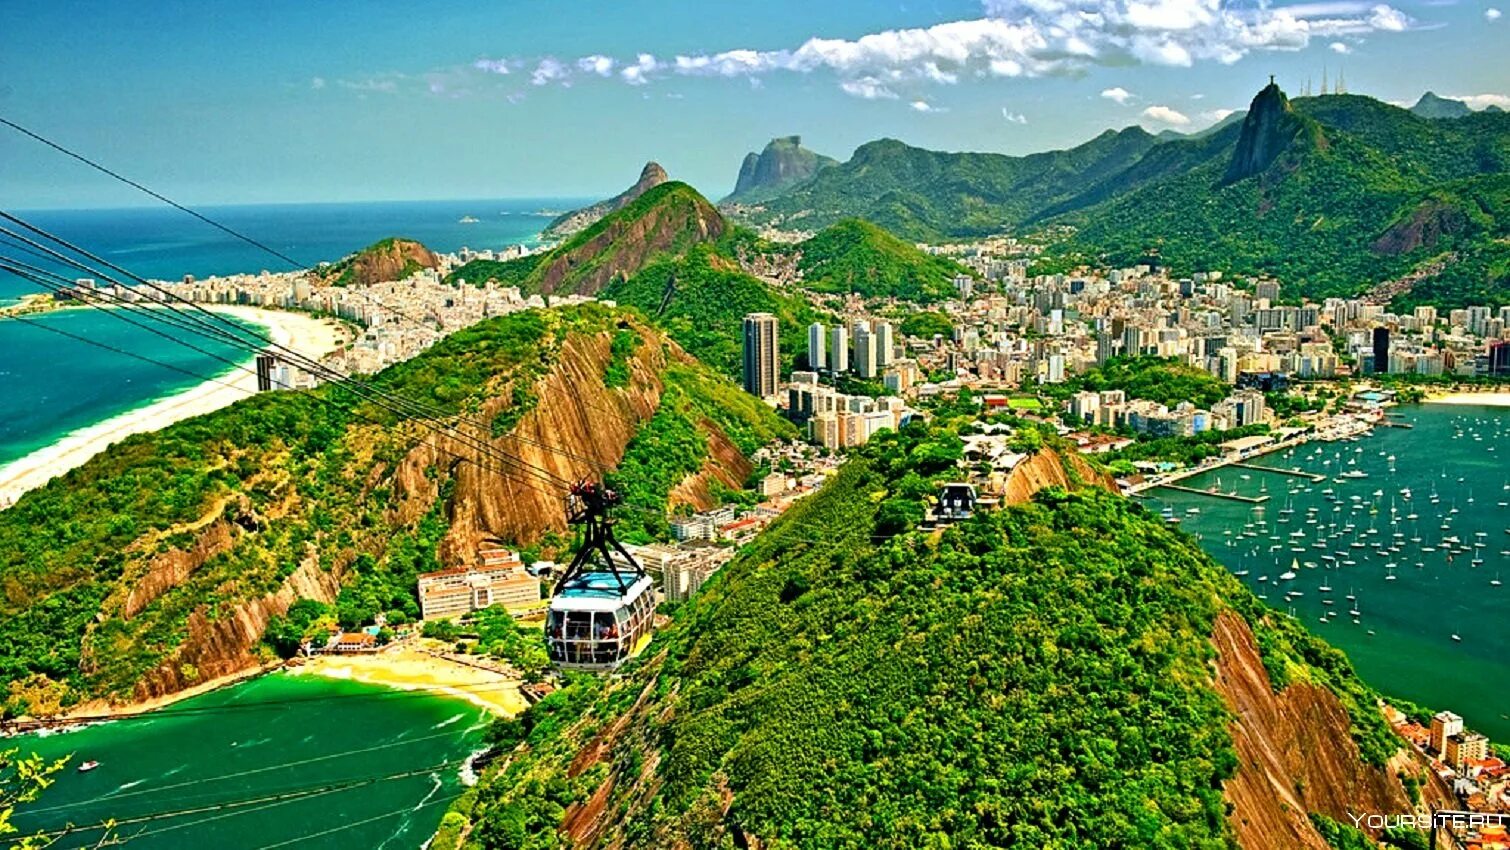 Rio d. Бразилия Рио де Жанейро. Рио-де-Жанейро город. Рио-де-Жанейро город в Бразилии достопримечательности. Южная Америка Рио де Жанейро.